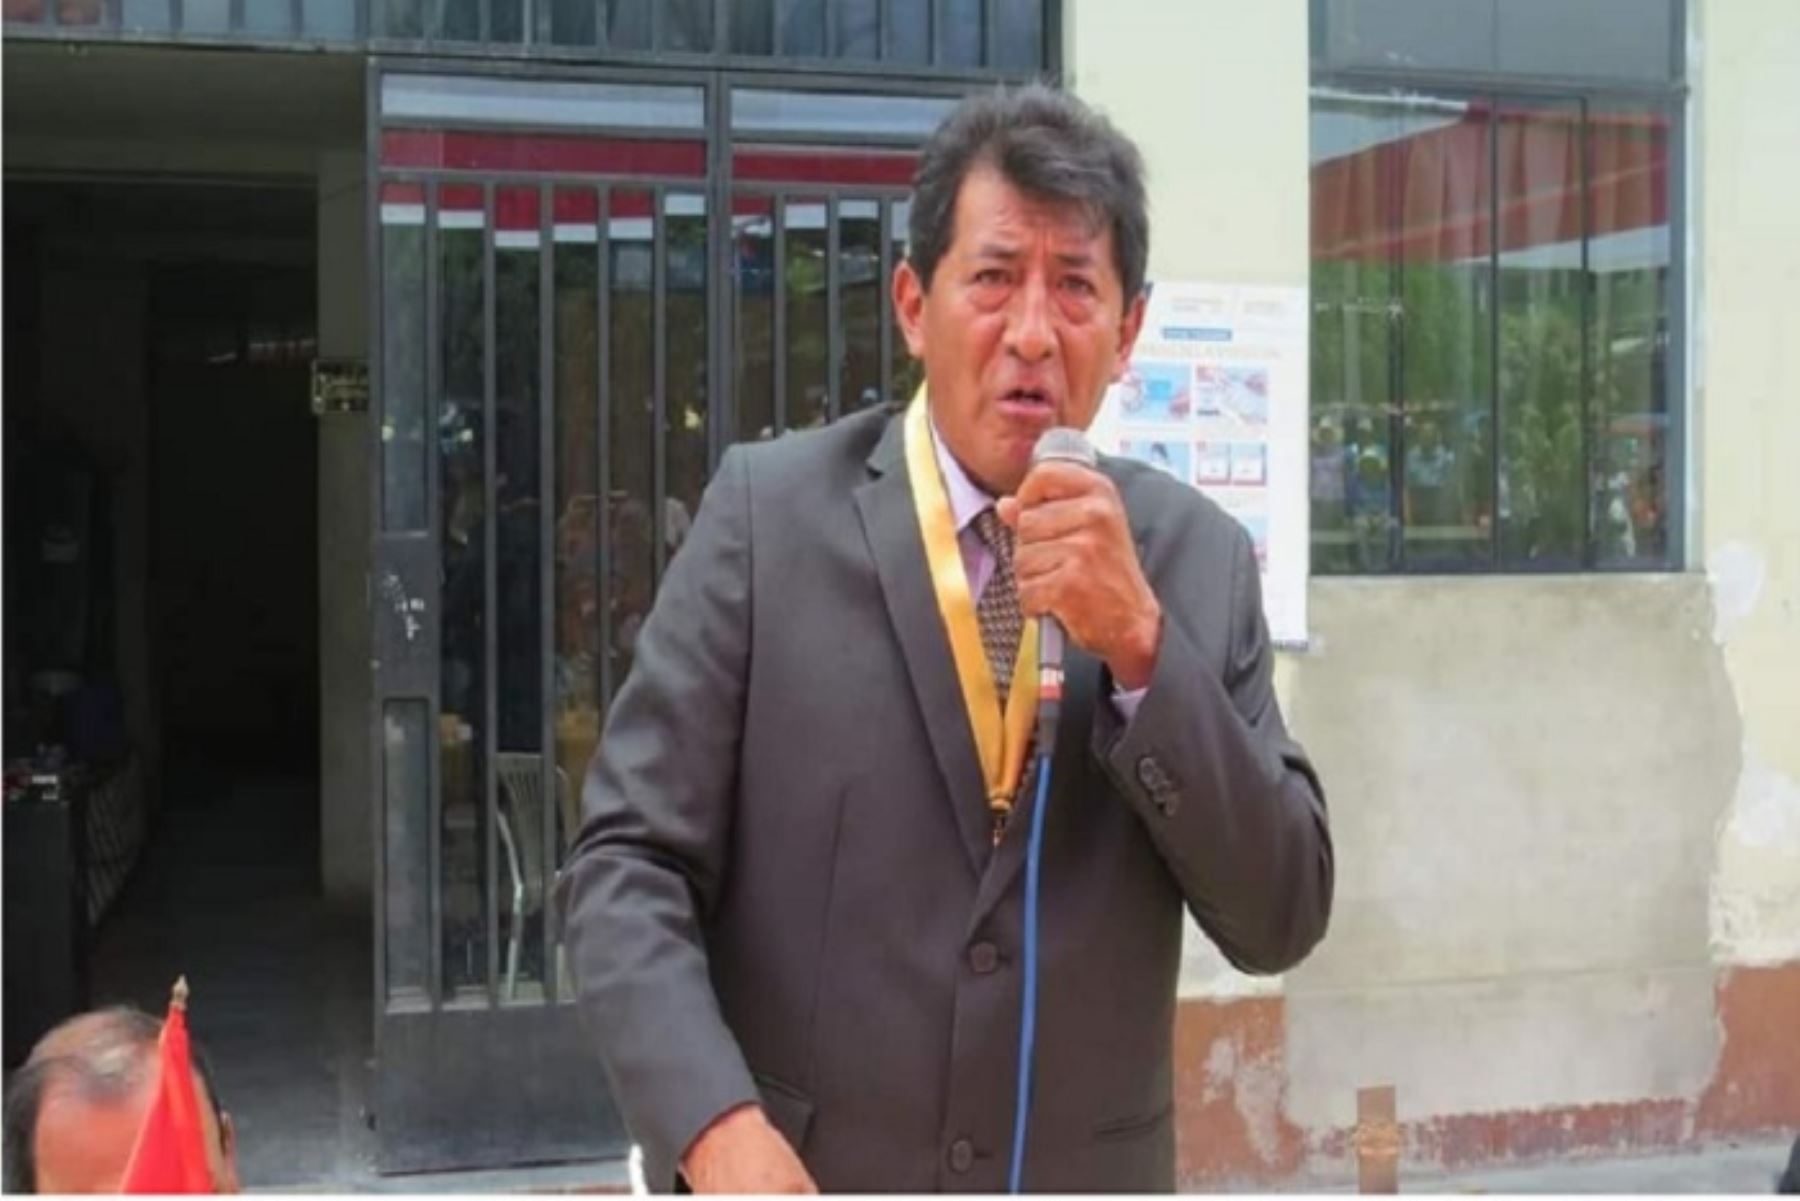 El alcalde Luis Alberto Sánchez Paz había sido elegido para desempeñar funciones durante el período 2019-2022;